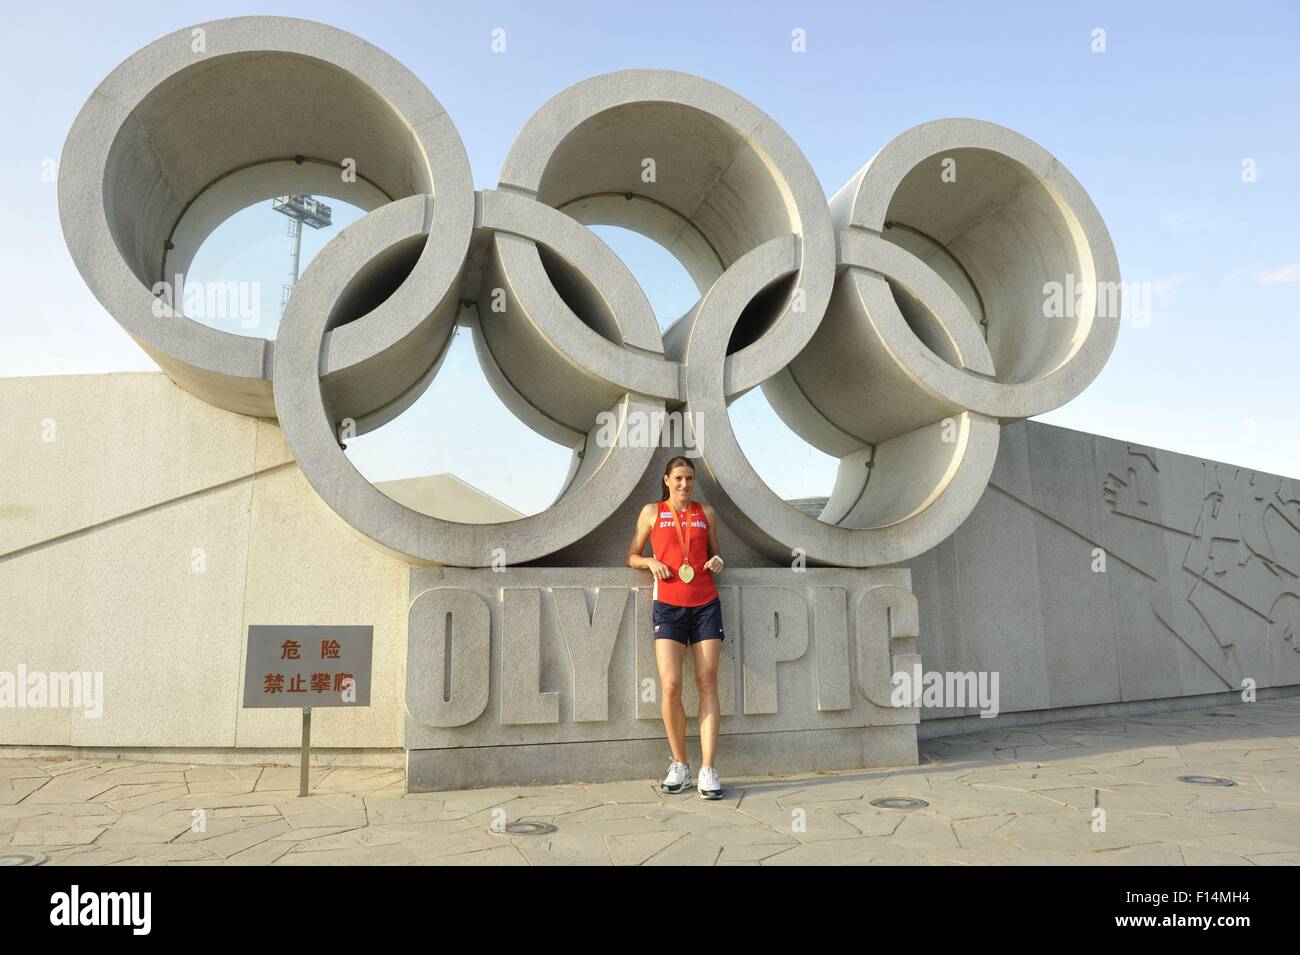 Pechino, Cina. Il 27 agosto, 2015. Donne 400m ostacoli medaglia d'oro Zuzana Hejnova della Repubblica ceca pone con la sua medaglia da Campionati del Mondo di atletica a Pechino in Cina, 26 agosto 2015. © Tibor Alfoldi/CTK foto/Alamy Live News Foto Stock